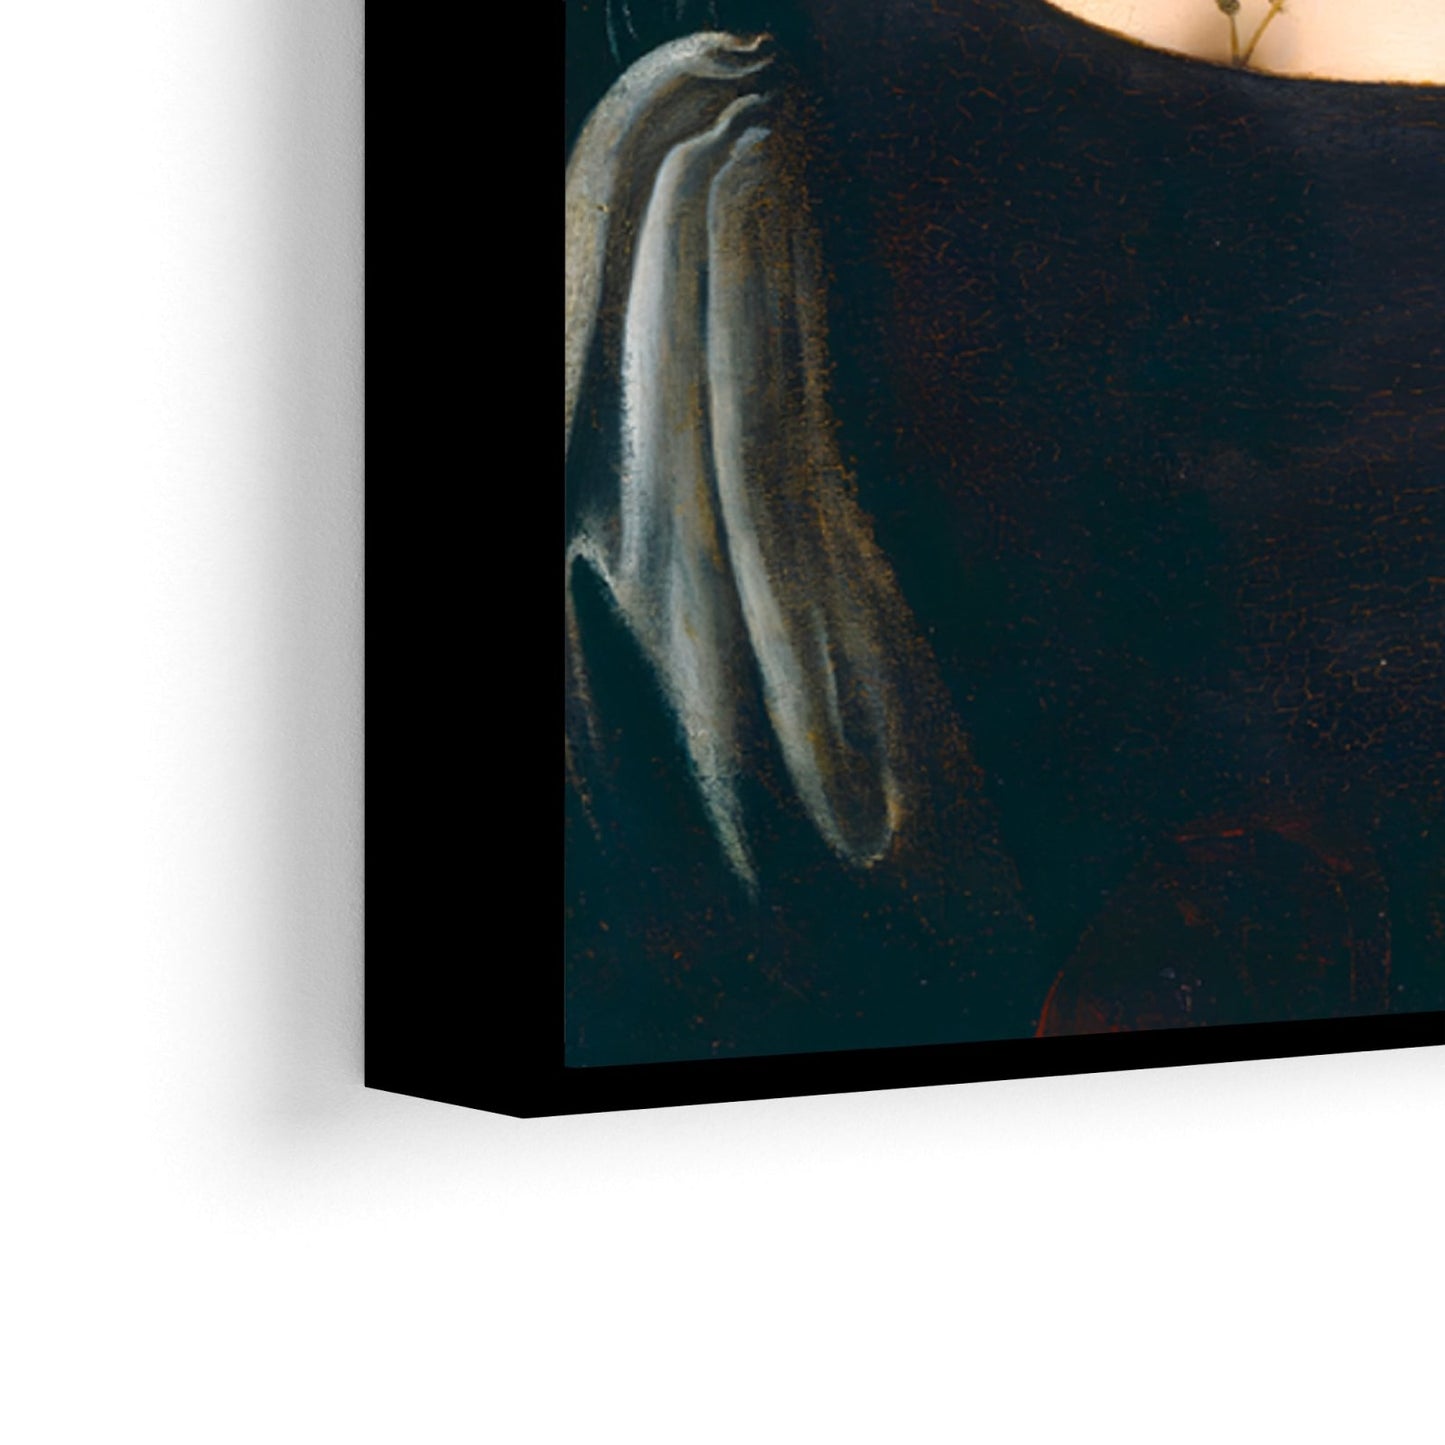 Egy fiatal nő, Leonardo Da Vinci portréja